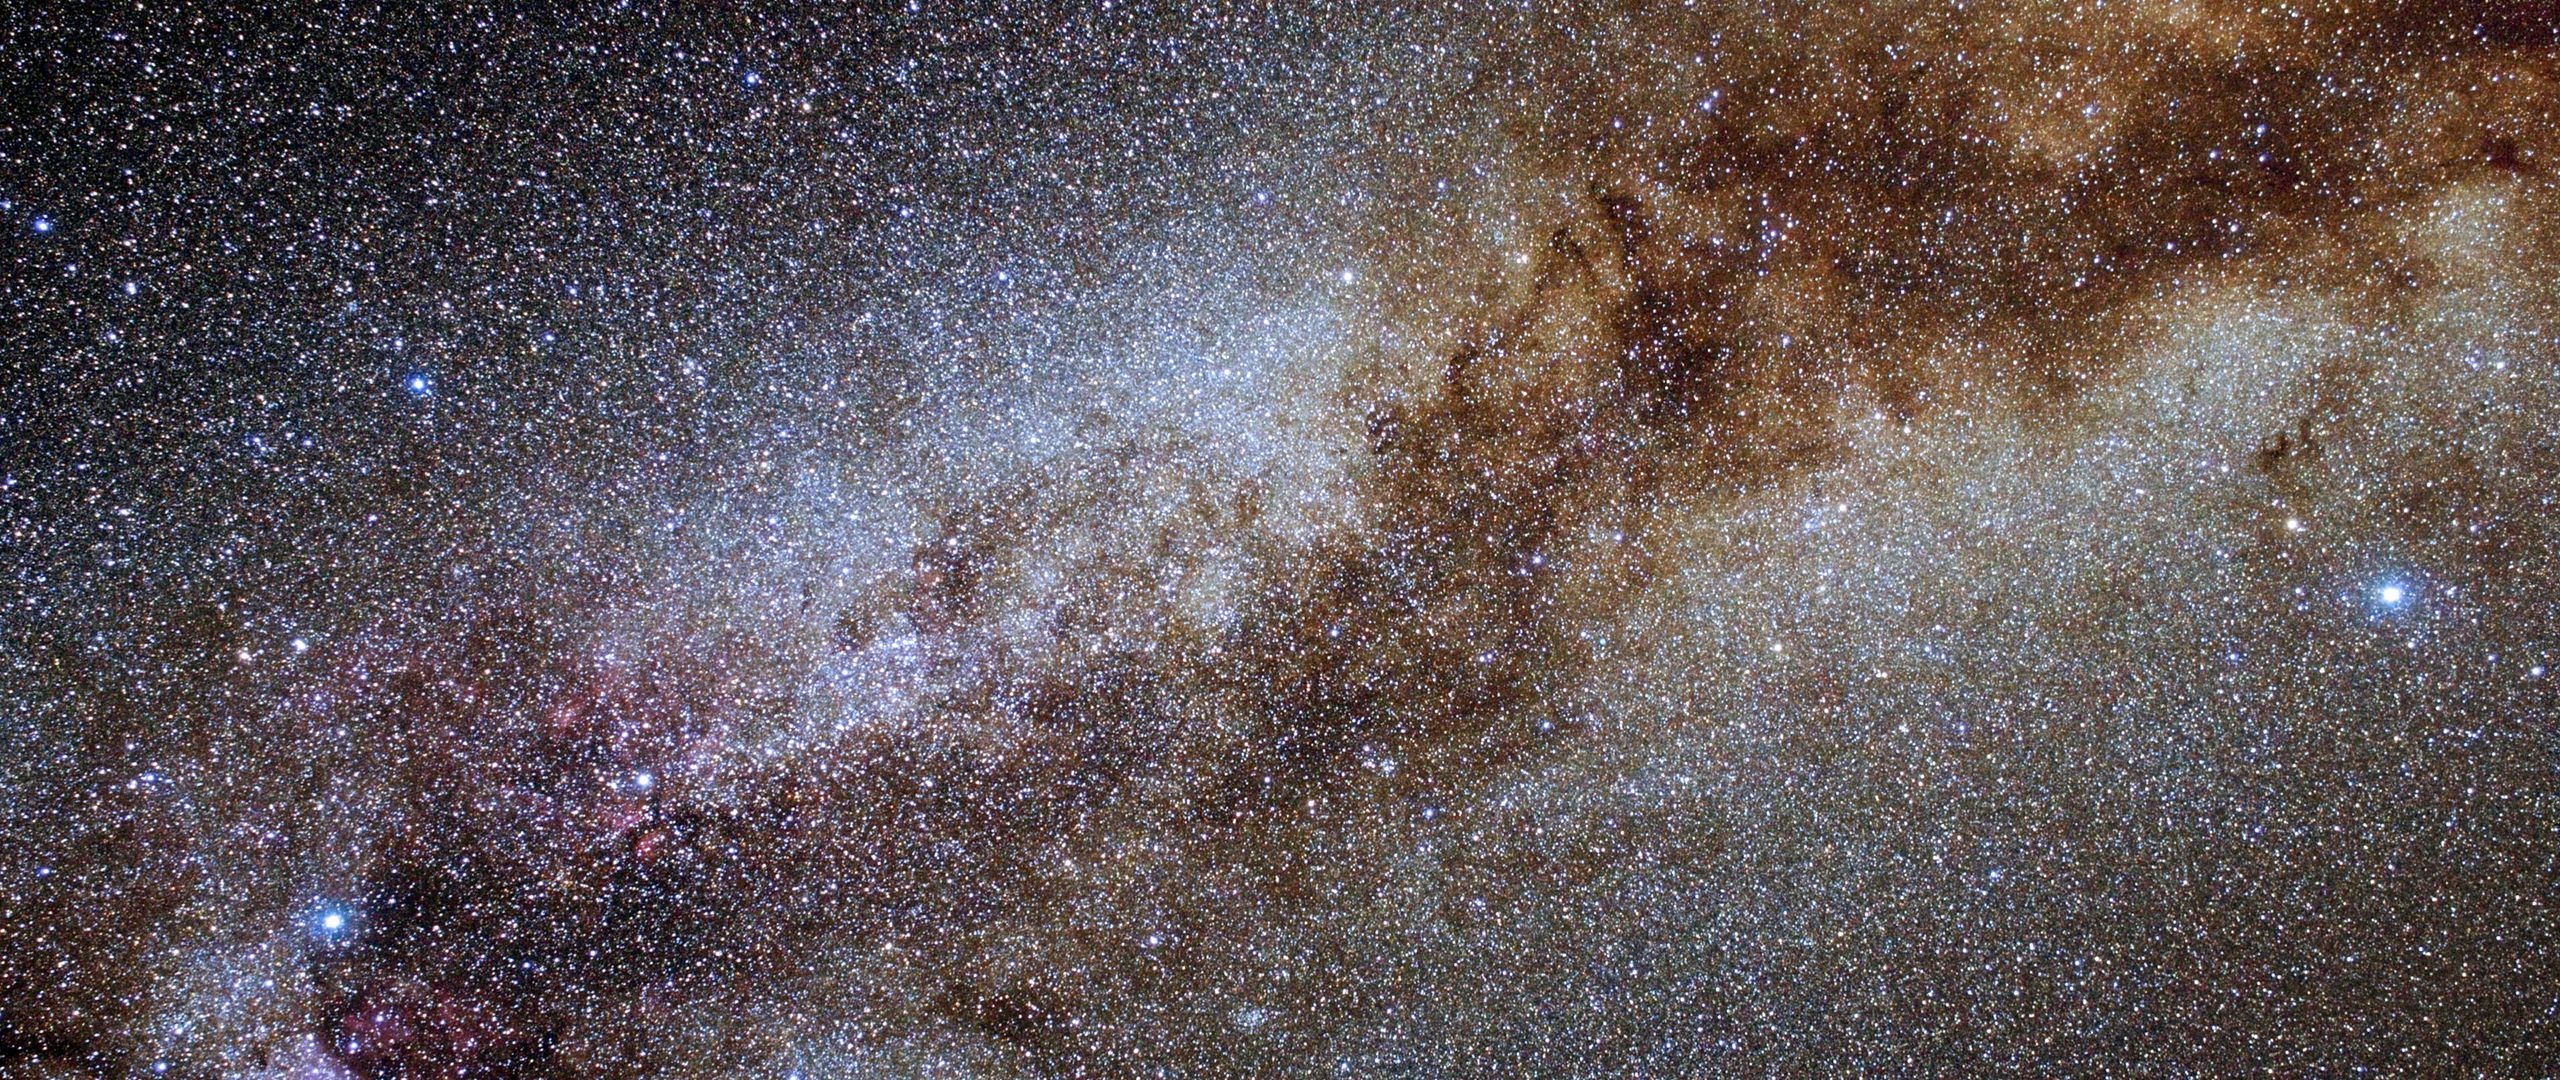 Hình nền vũ trụ sao 2560x1080: Khám phá vẻ đẹp tuyệt vời của vũ trụ sao trên màn hình của bạn. Hình nền vũ trụ sao 2560x1080 sẽ cho bạn những trải nghiệm tuyệt vời nhất về không gian vô tận và những ánh sáng lấp lánh.